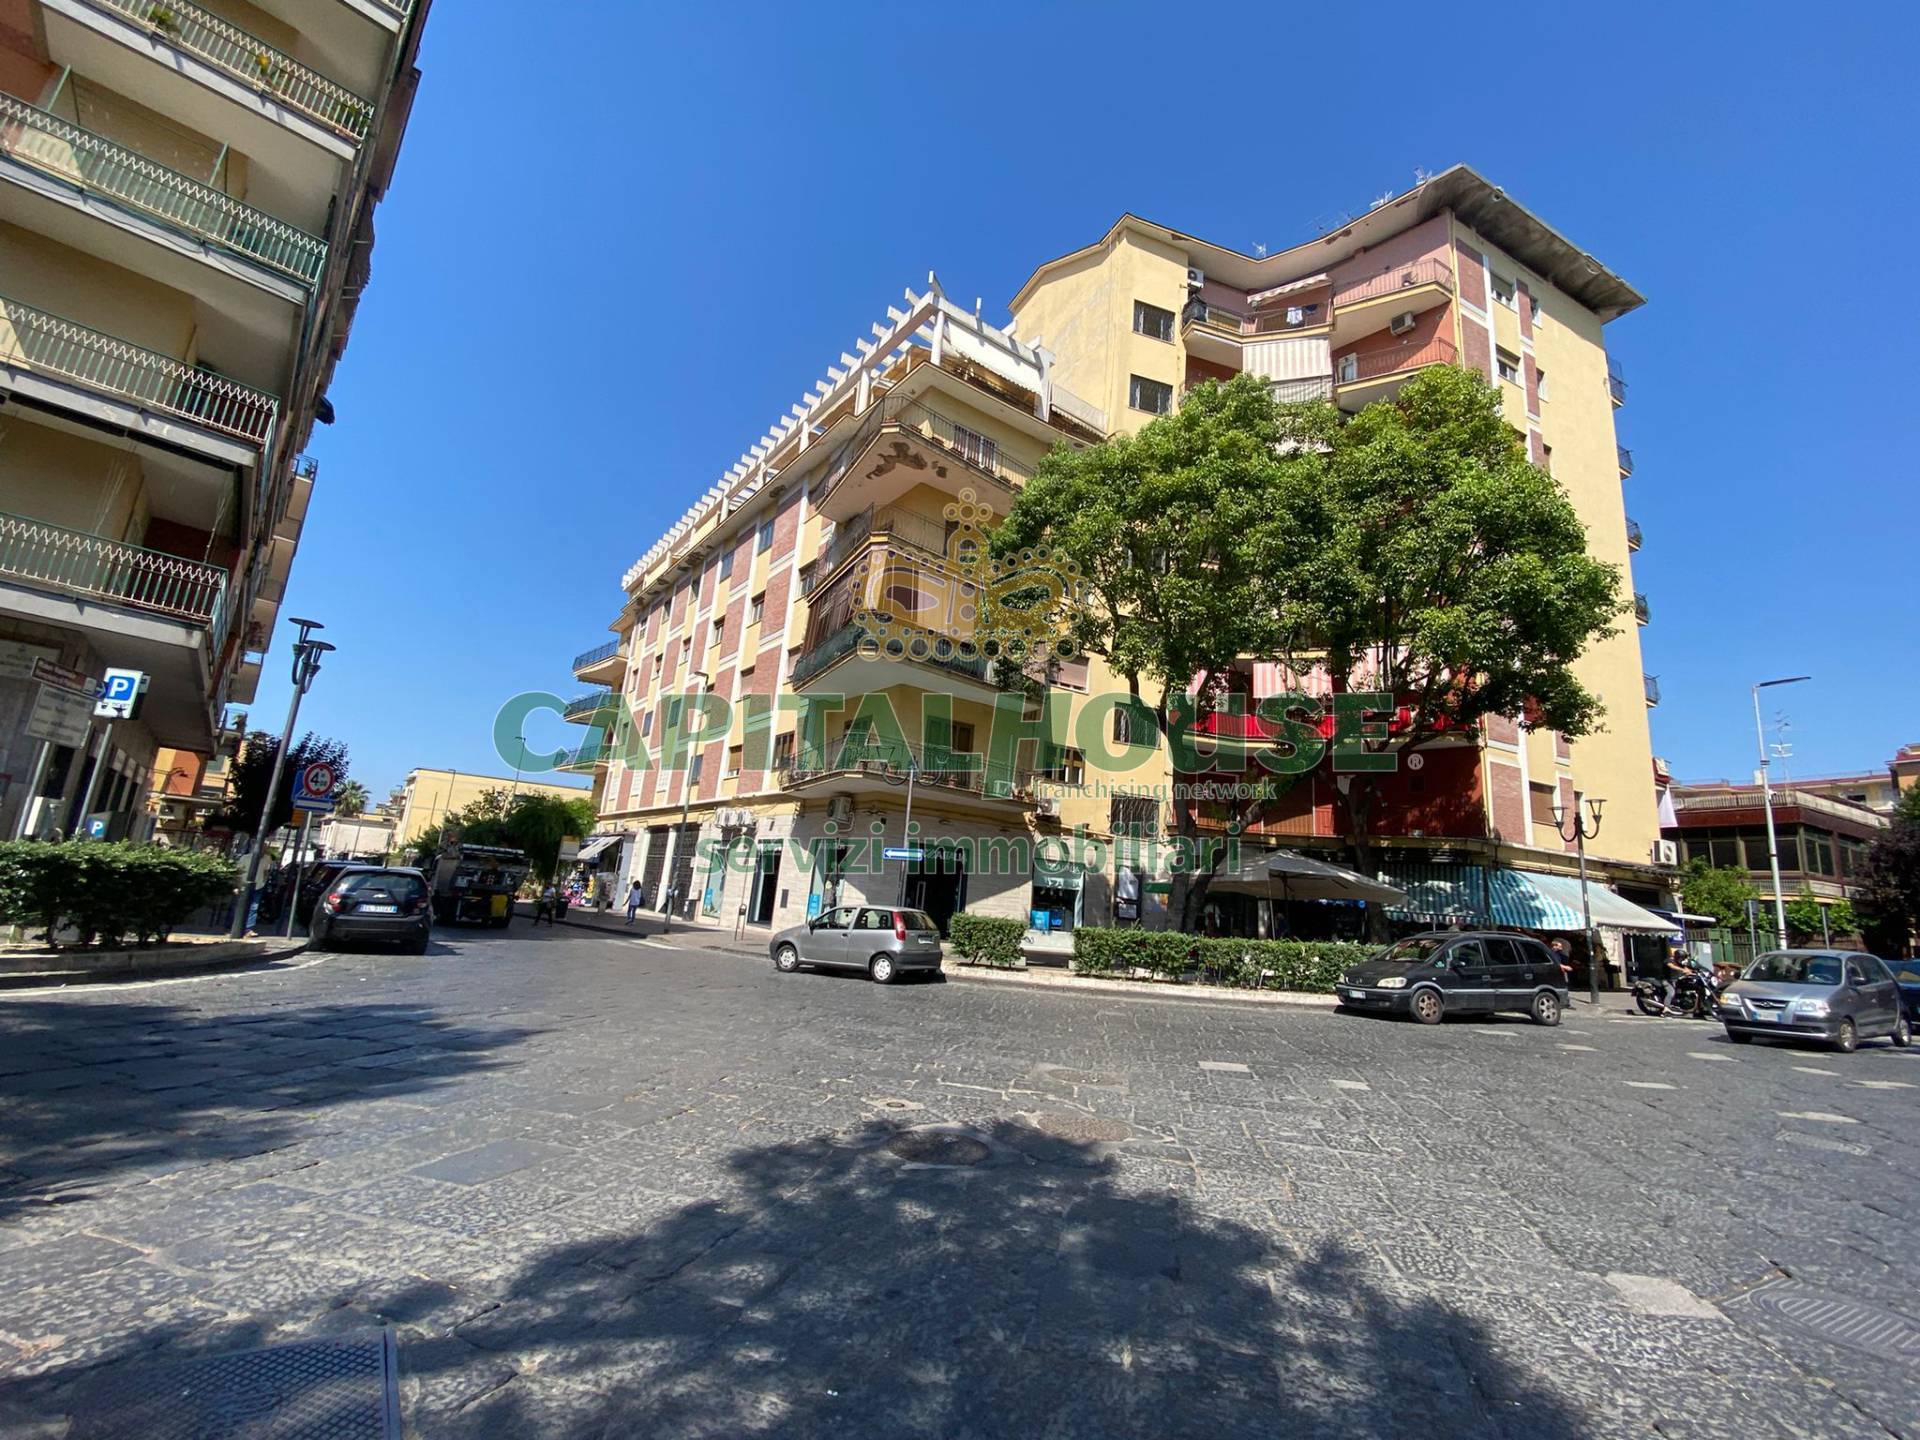 Appartamento in vendita a San Giorgio a Cremano, 5 locali, prezzo € 410.000 | CambioCasa.it